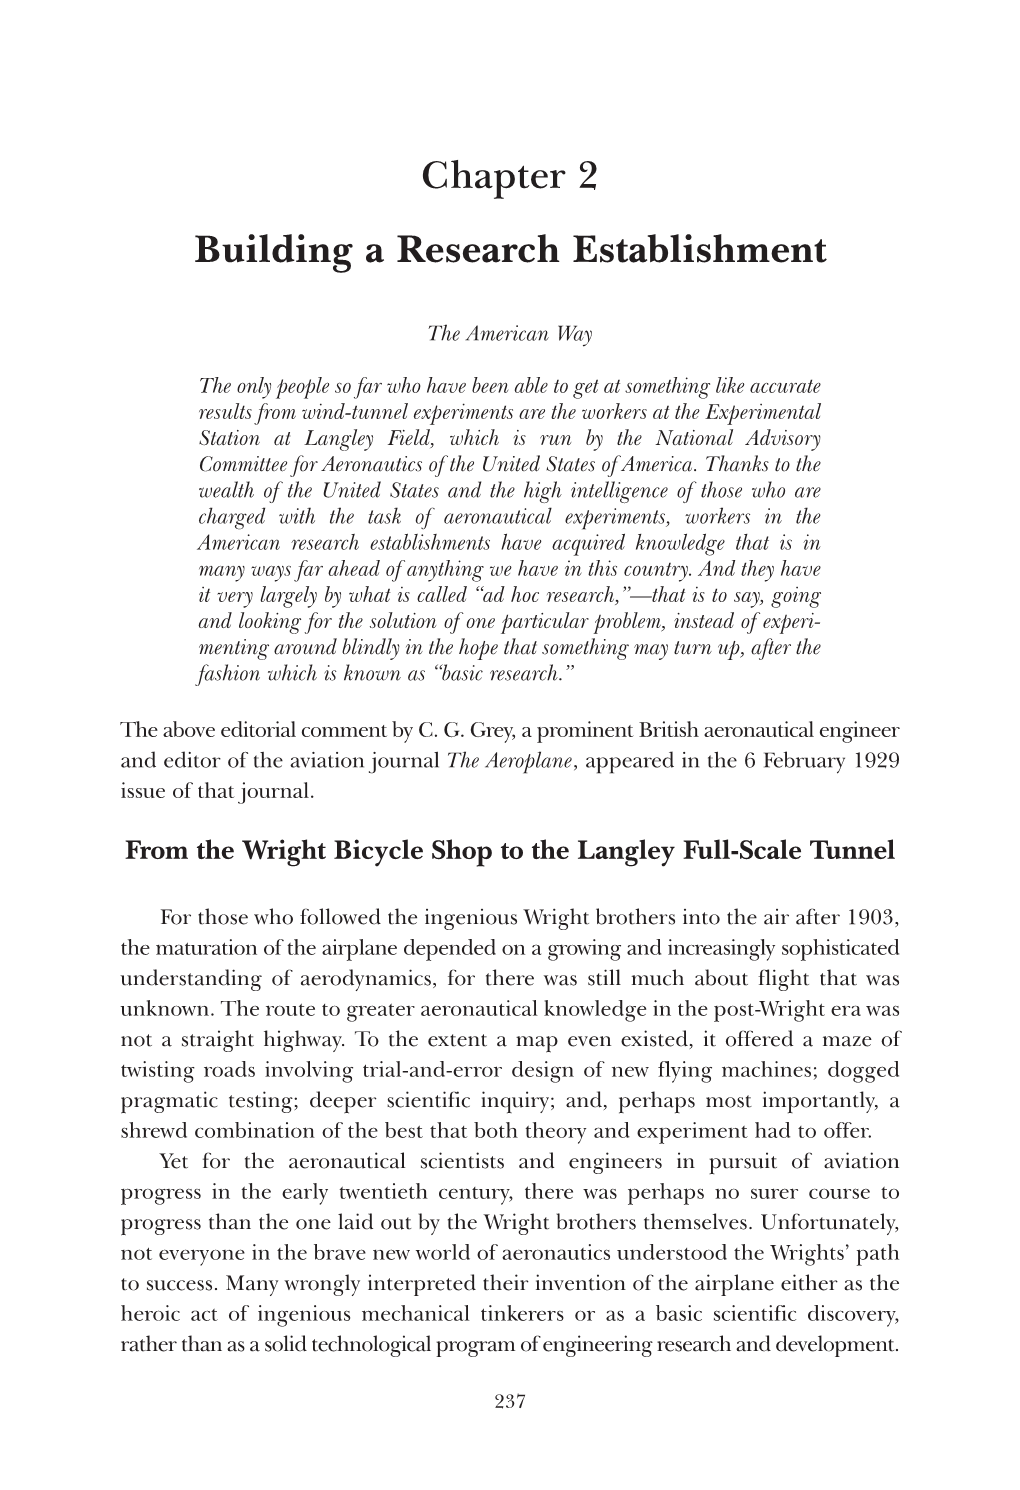 Chapter 2 Building a Research Establishment